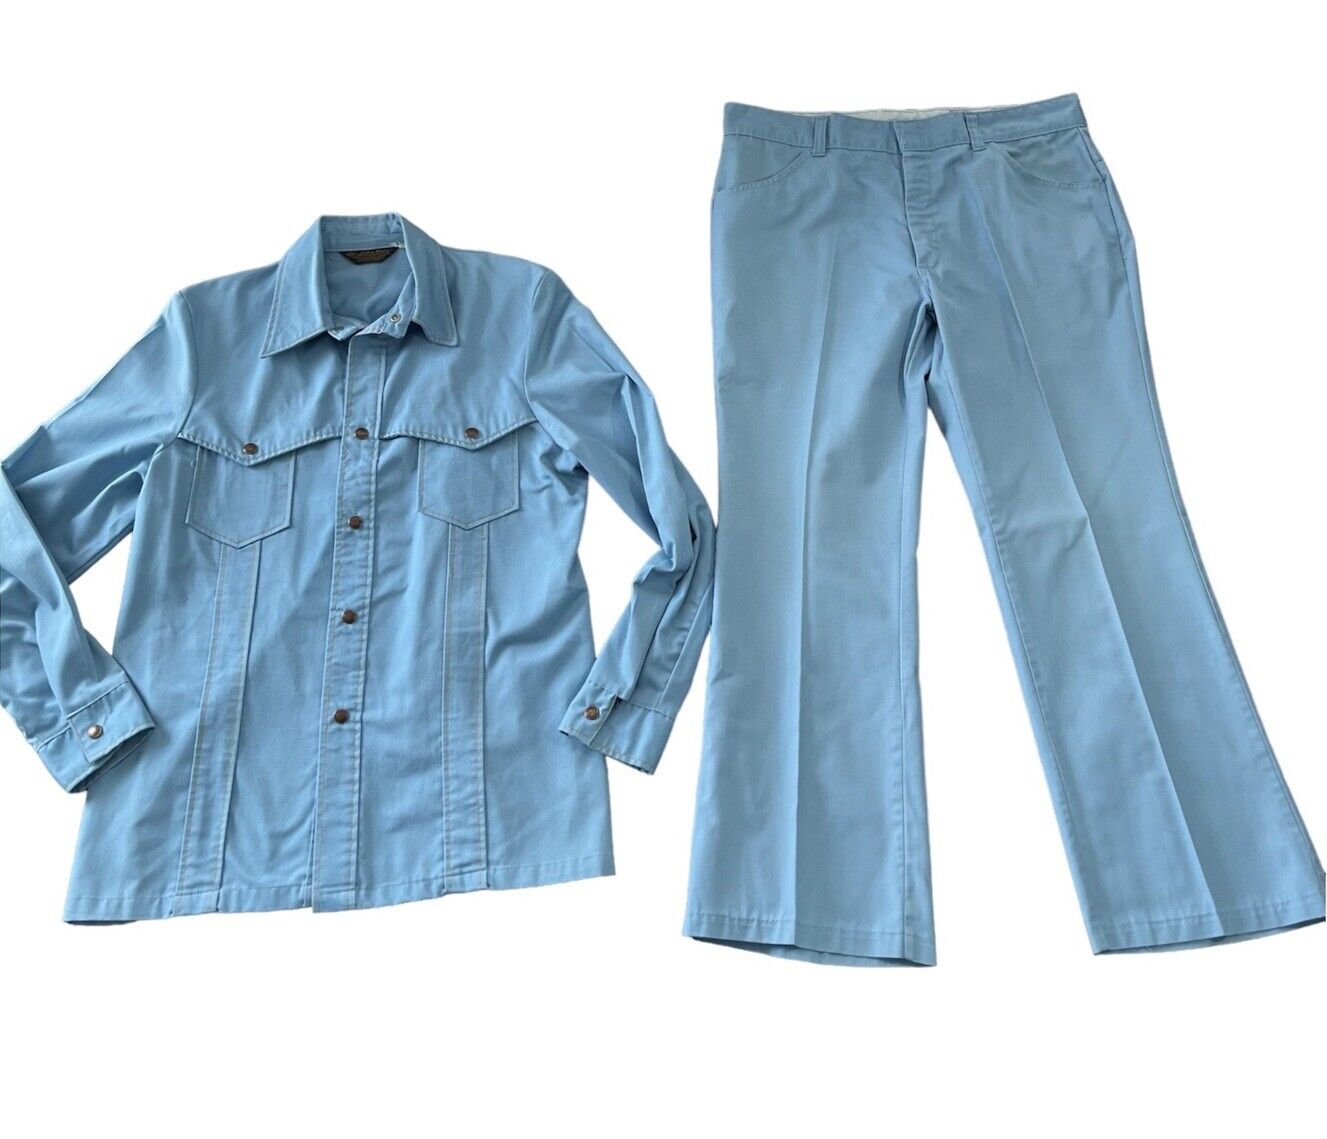 John Blair 1970s Vintage Western Suit Baby Blue Button Shirt & Pants Sz Large ?